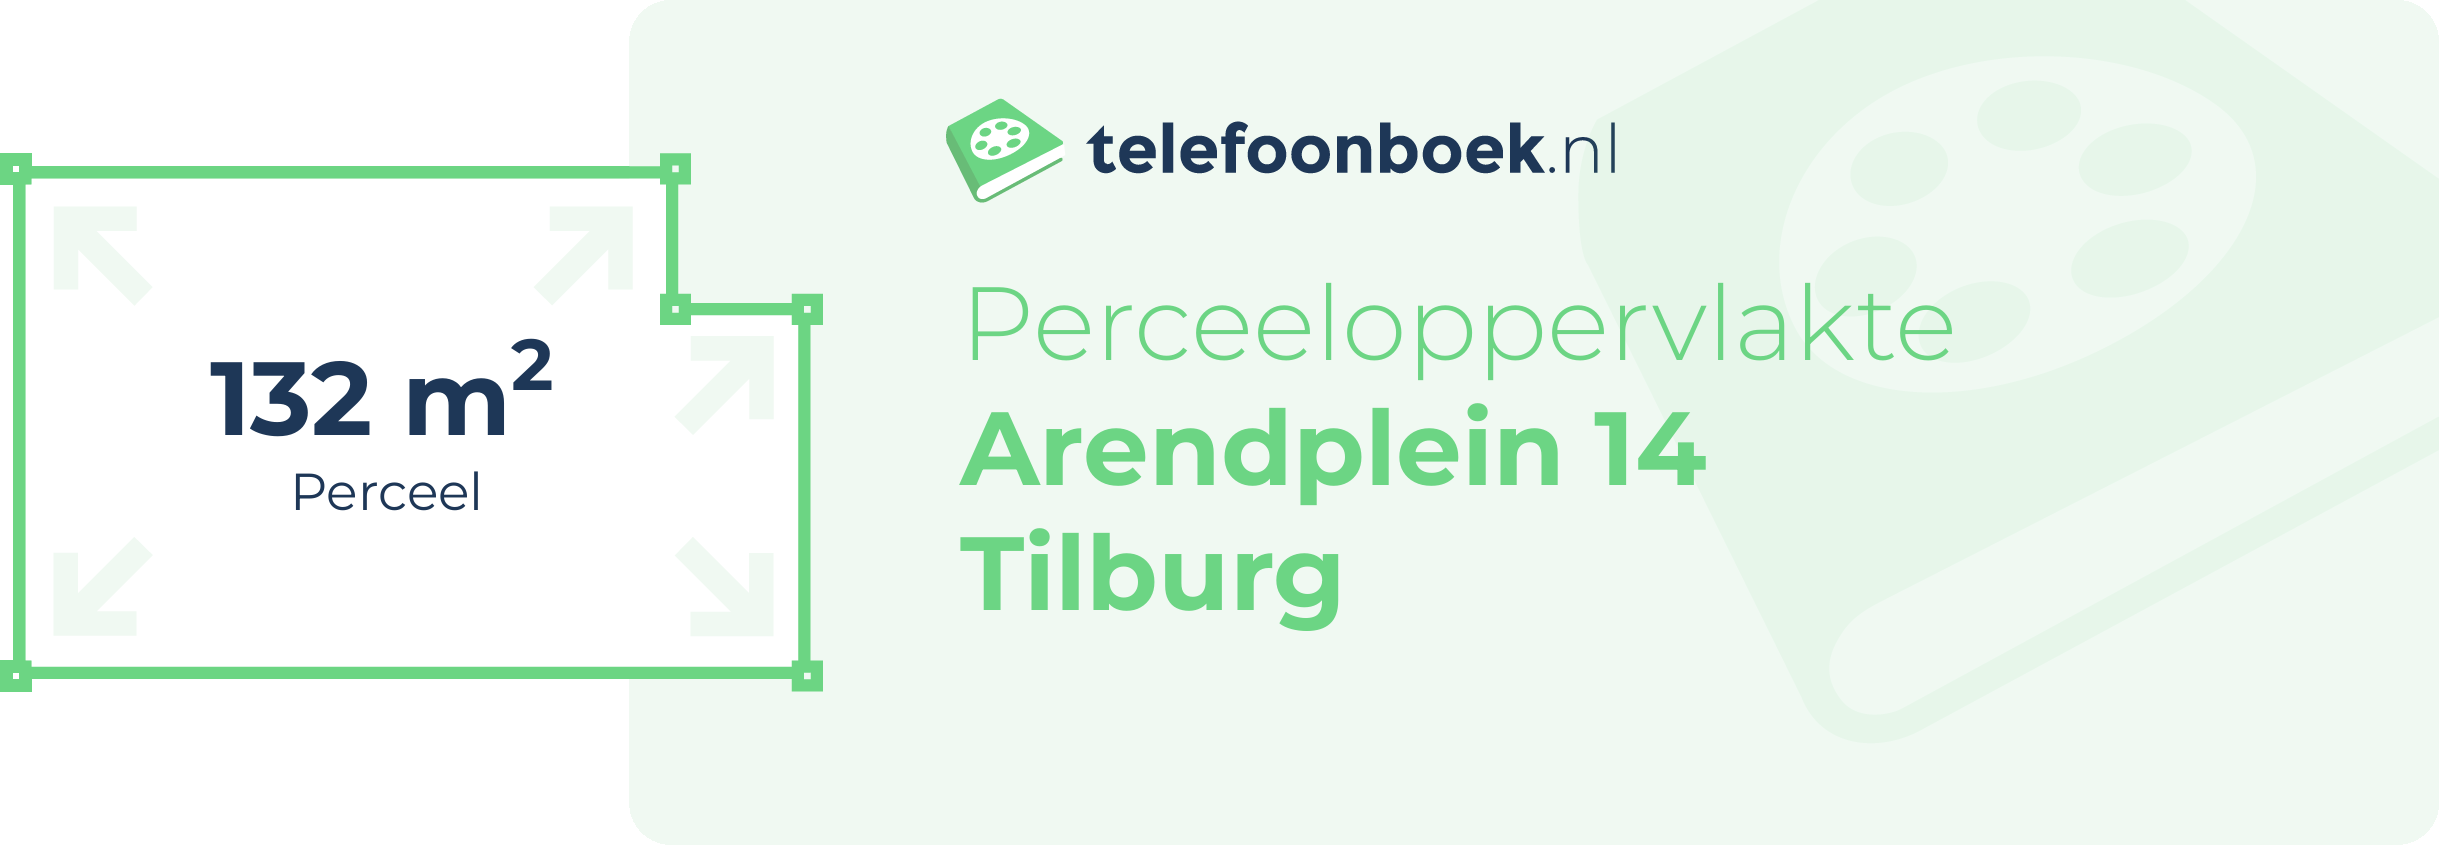 Perceeloppervlakte Arendplein 14 Tilburg